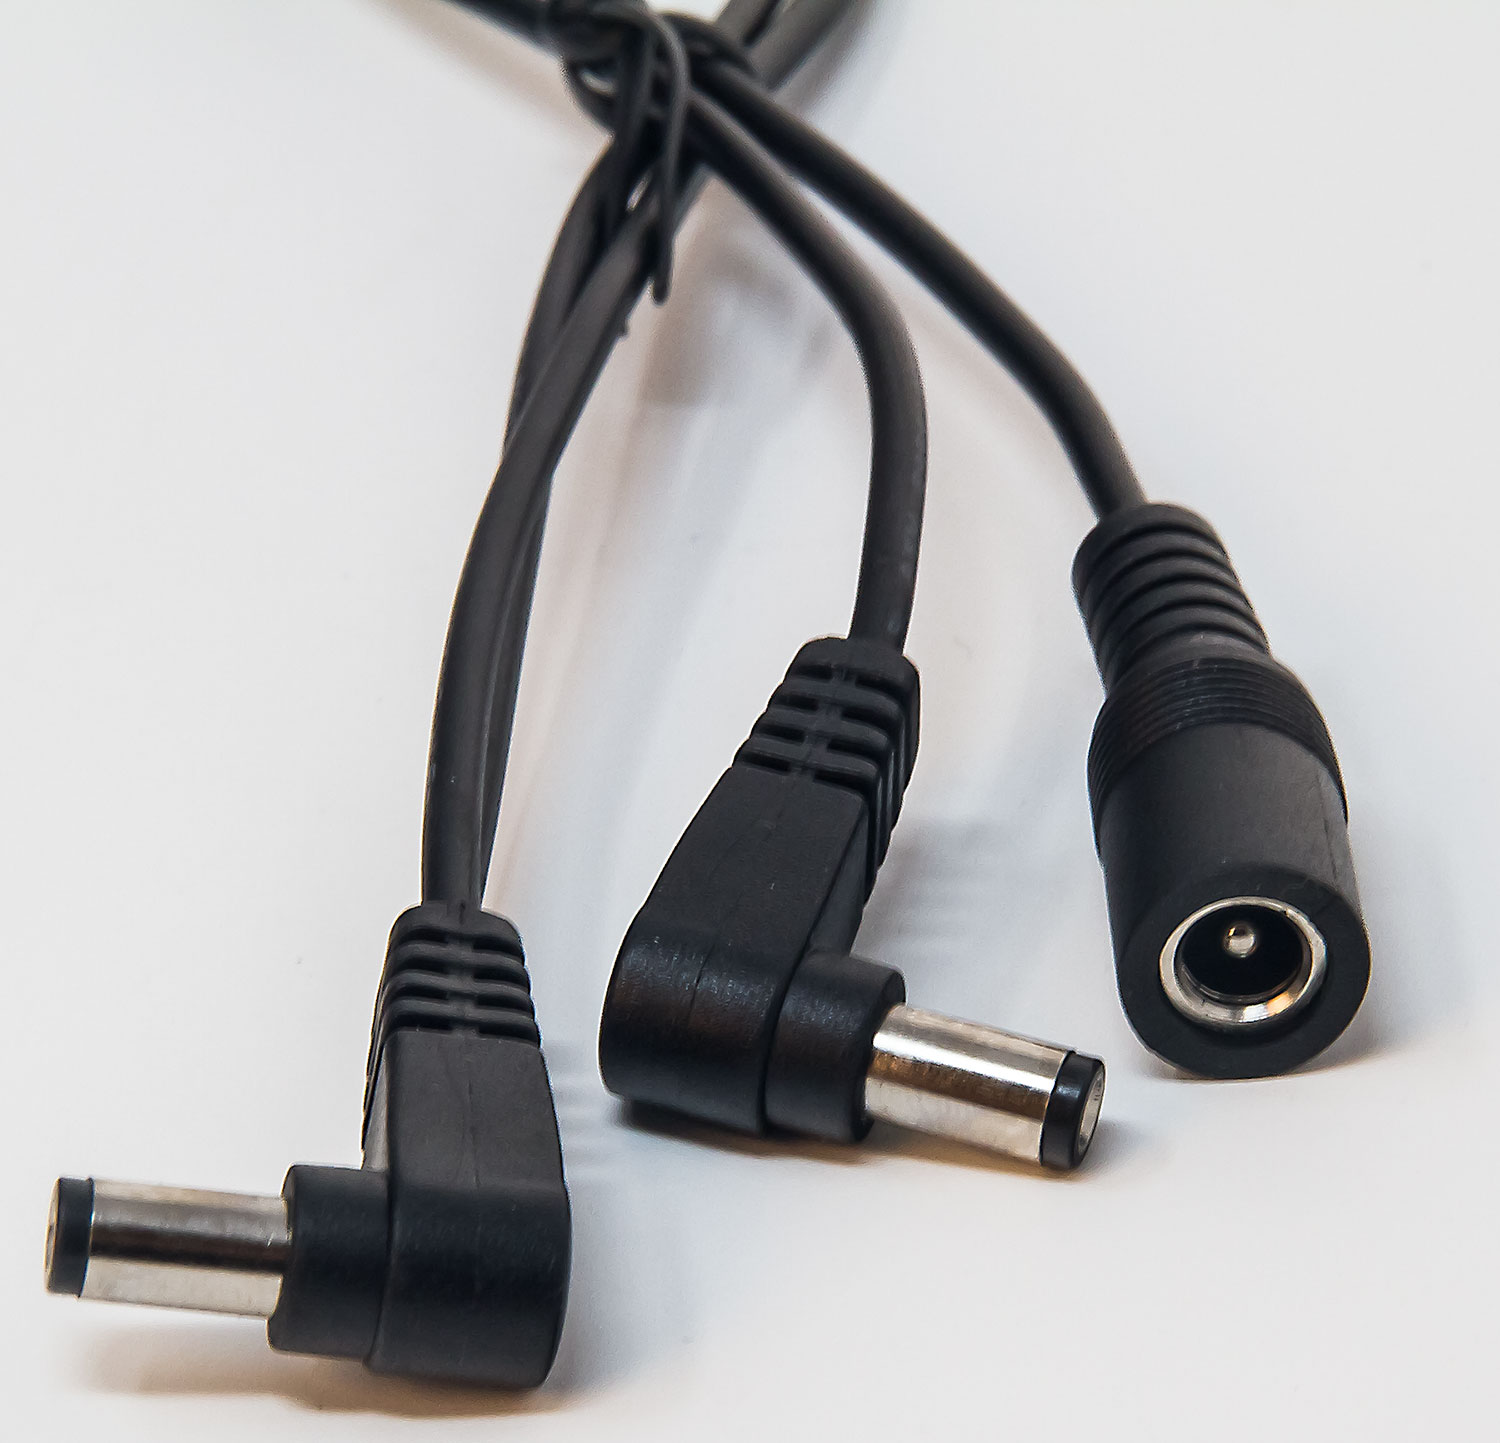 X-tone 2-way Chain Cable Alimentation Pedales - Adaptador de conexión - Variation 1